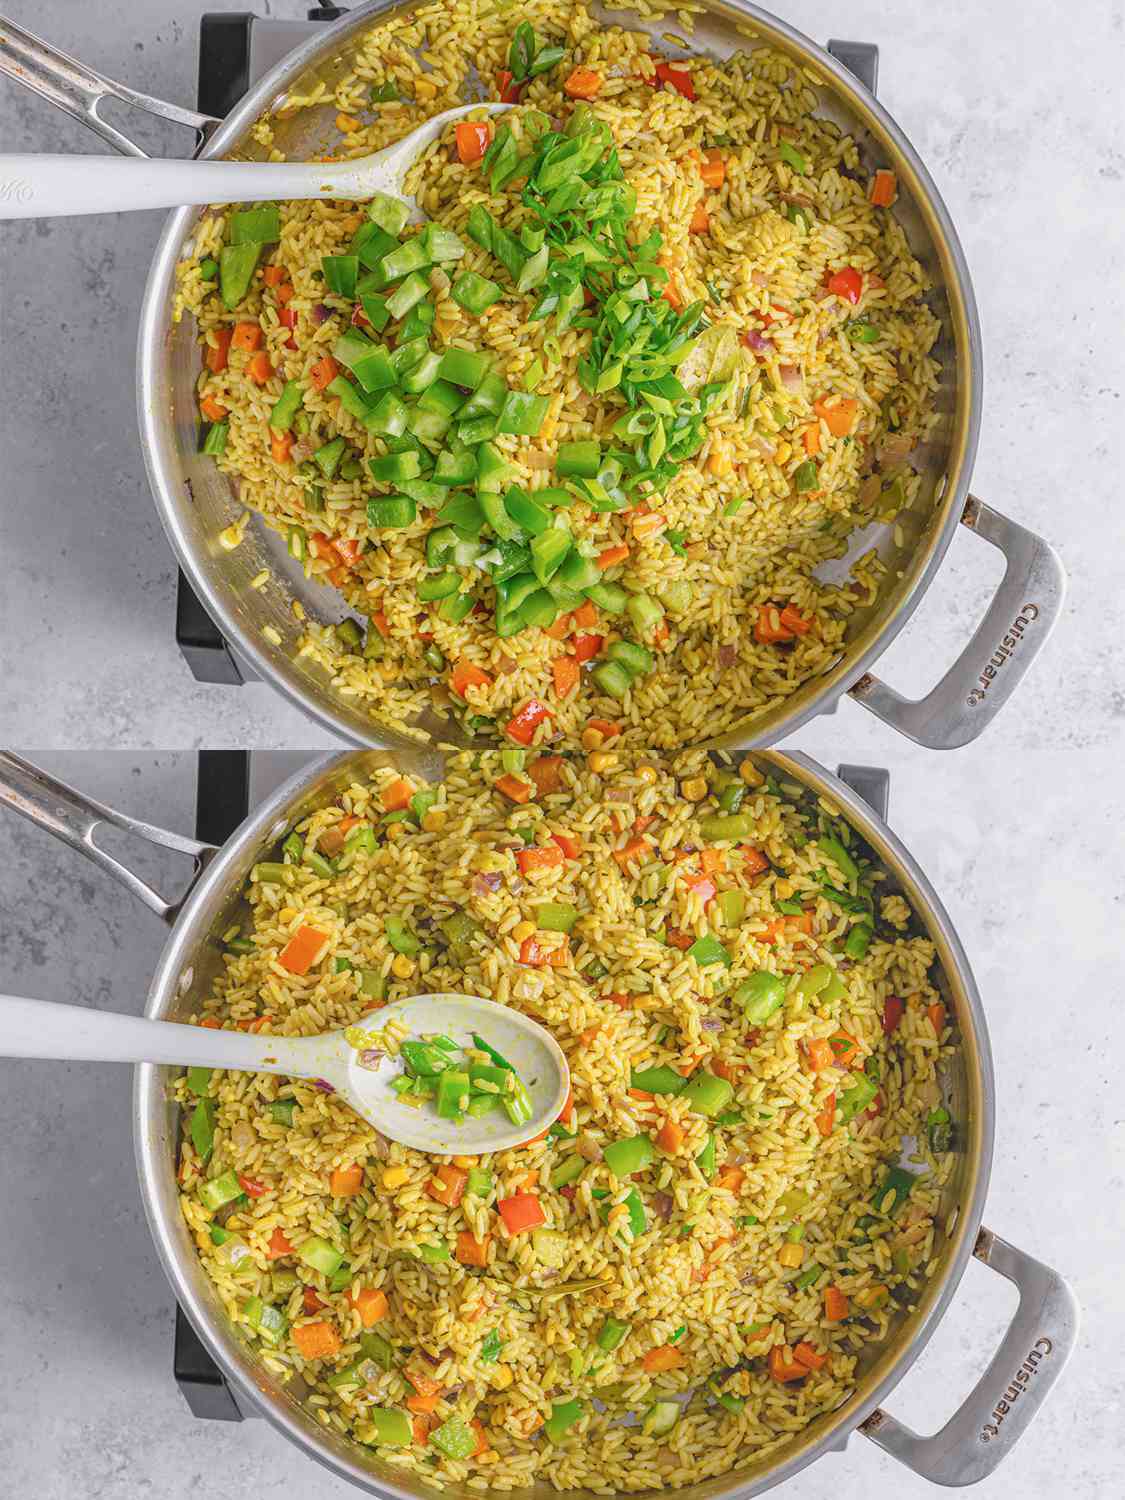 两个图像拼贴。上图:切好的葱花和青椒加入米饭中。下:炒饭完成